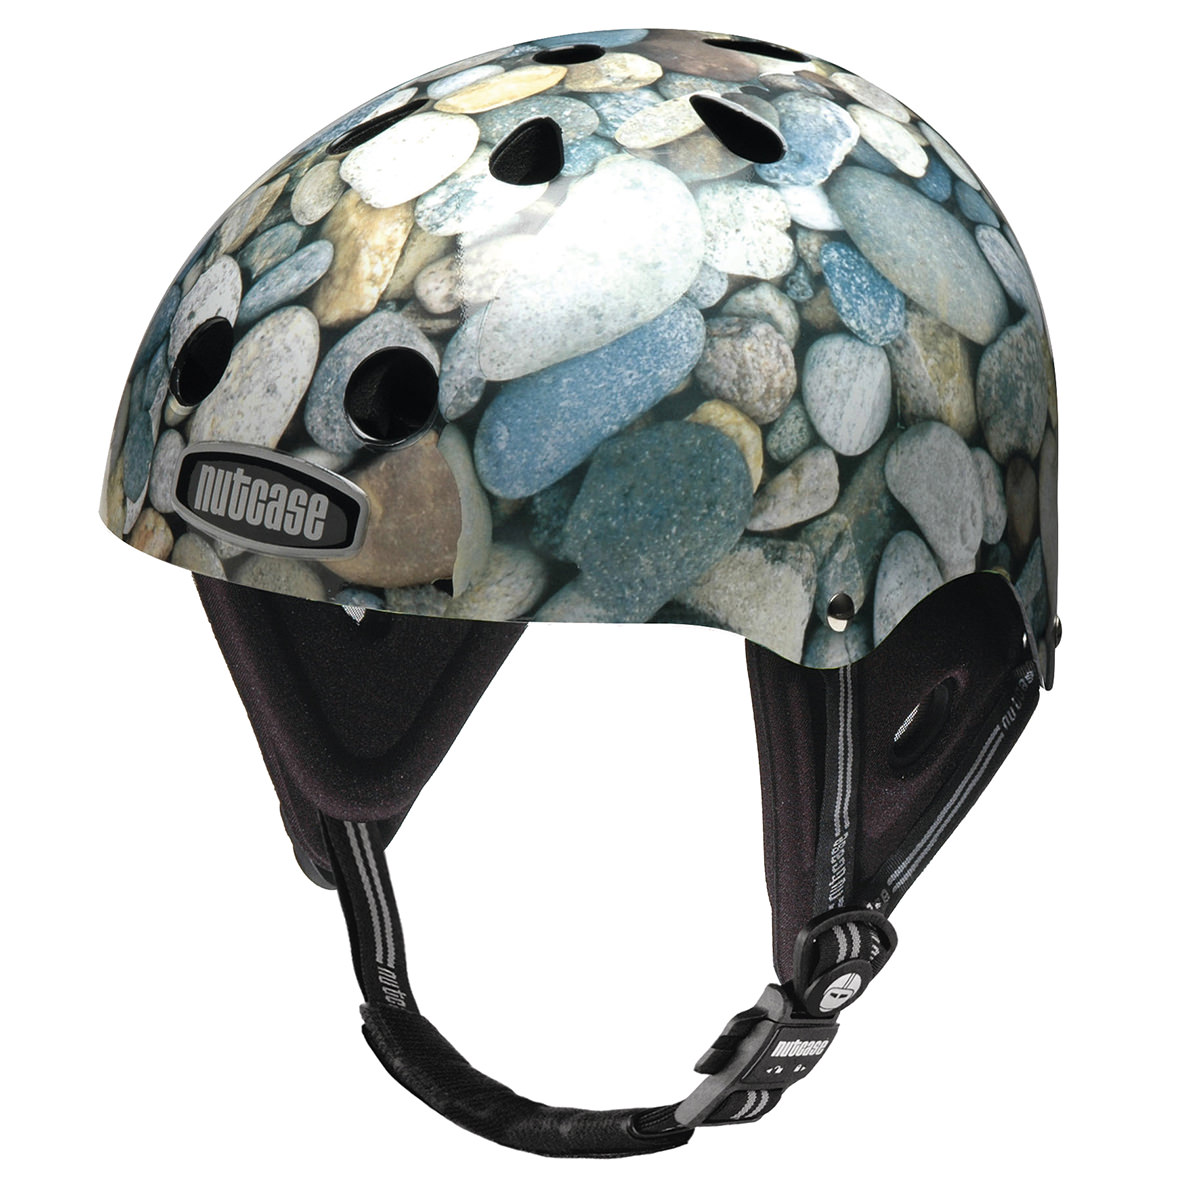 ウォータースポーツ用ヘルメット Nutcase Water Sport Helmet | NUTCASE HELMET